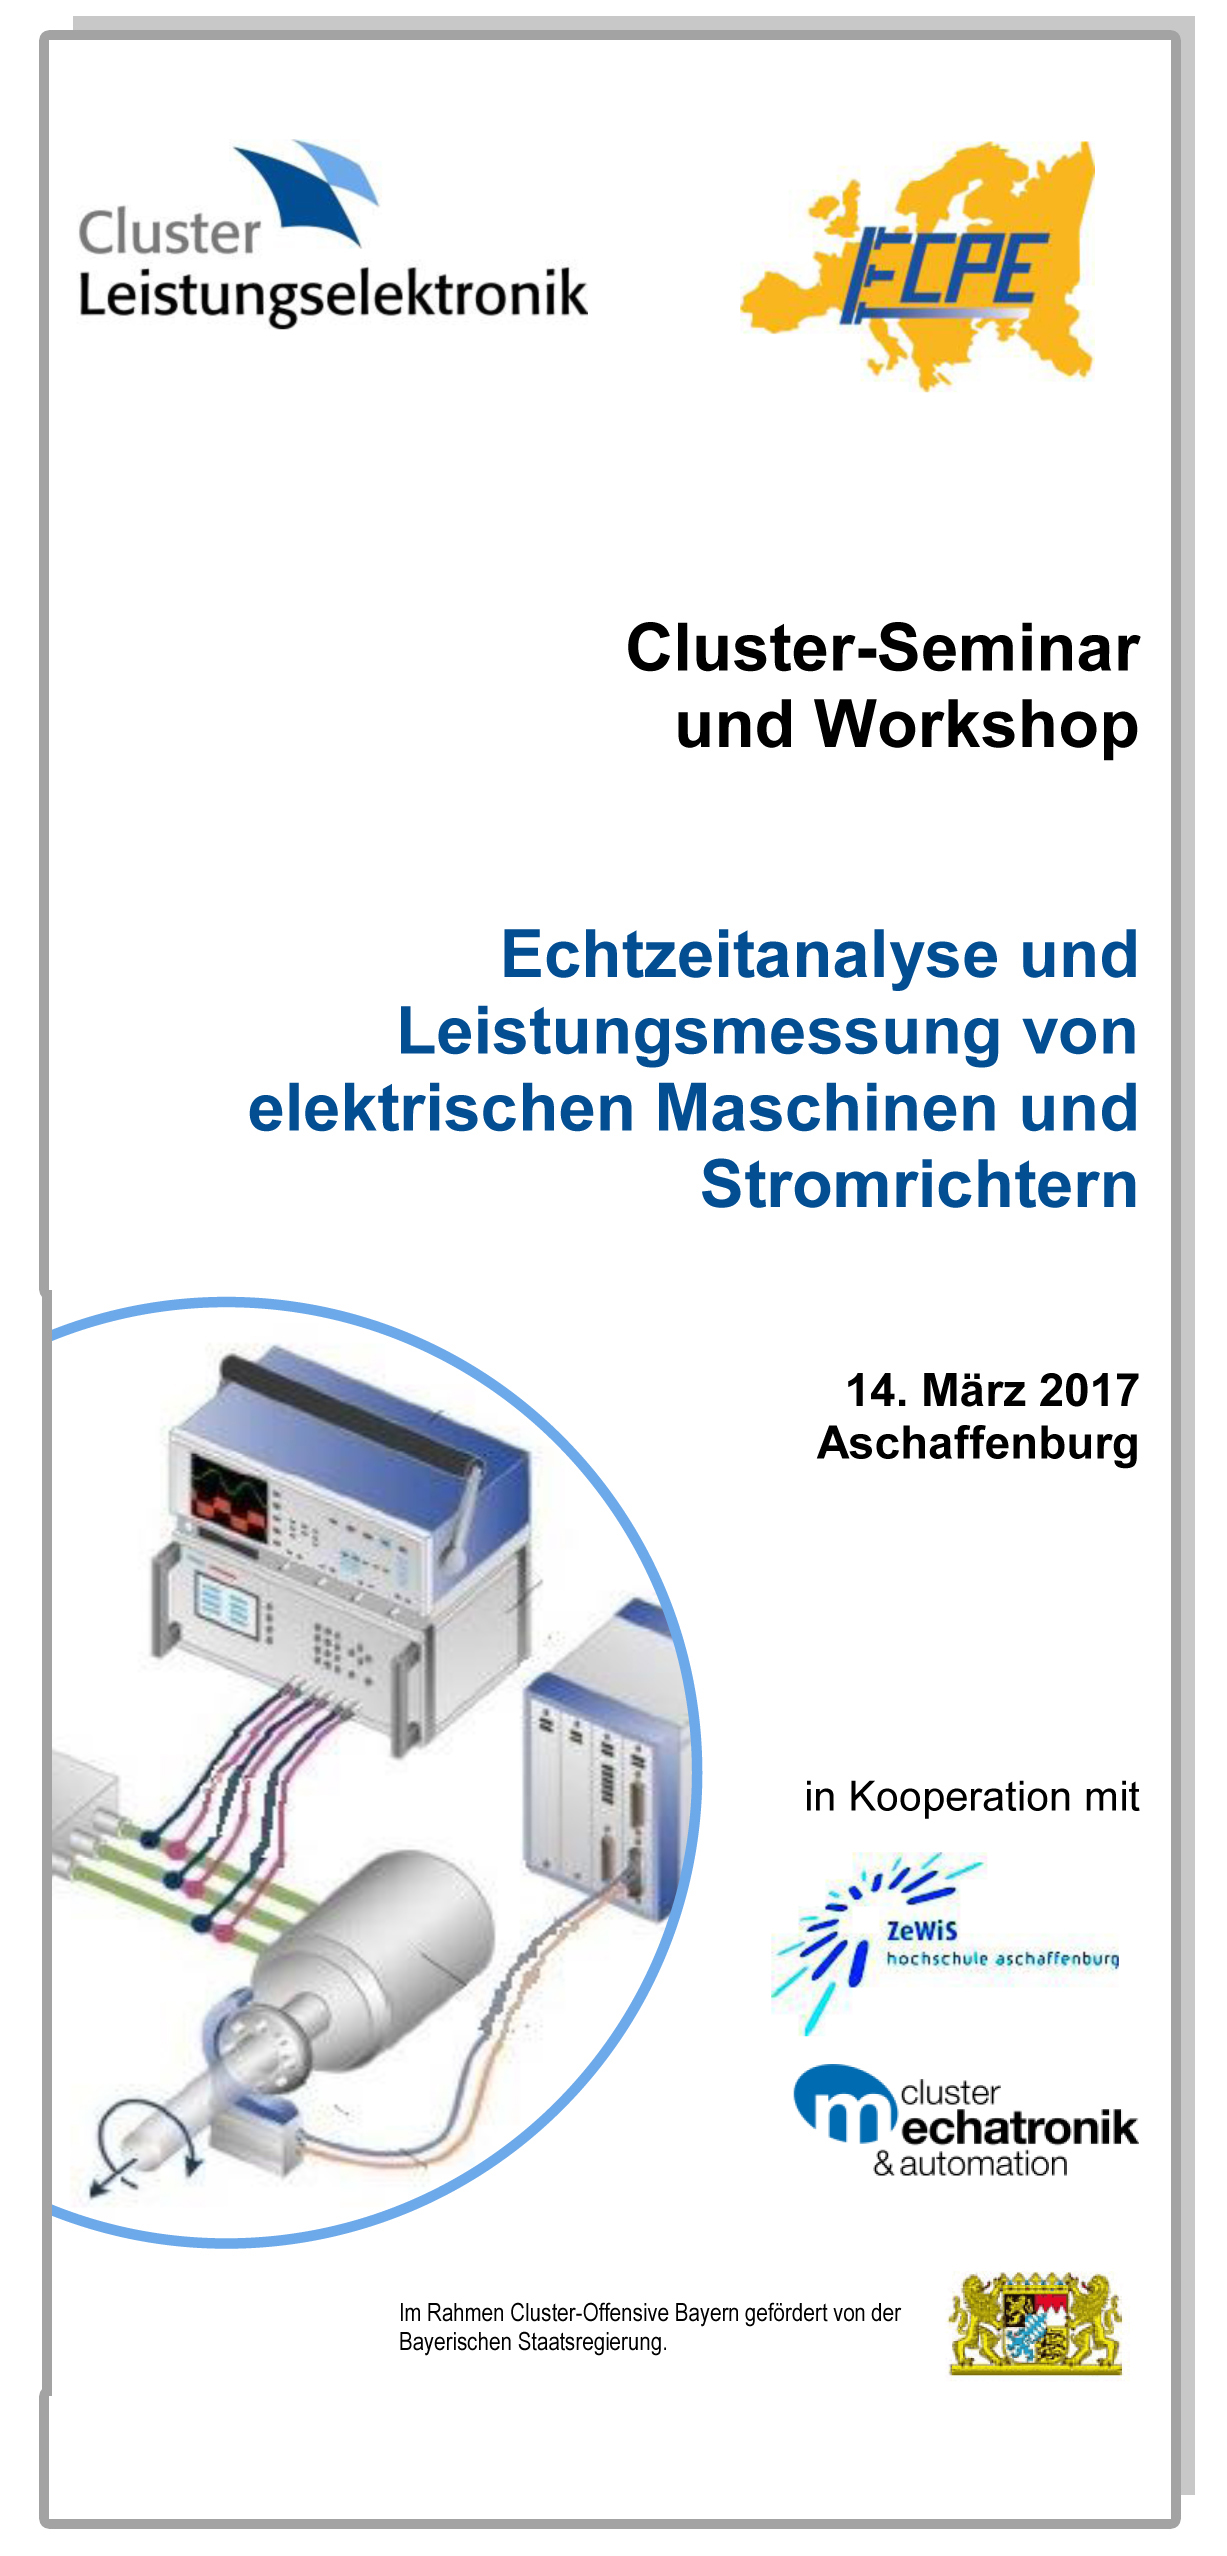 Cluster-Seminar mit Workshop: Echtzeitanalyse und Leistungsmessung von elektrischen Maschinen und Stromrichtern